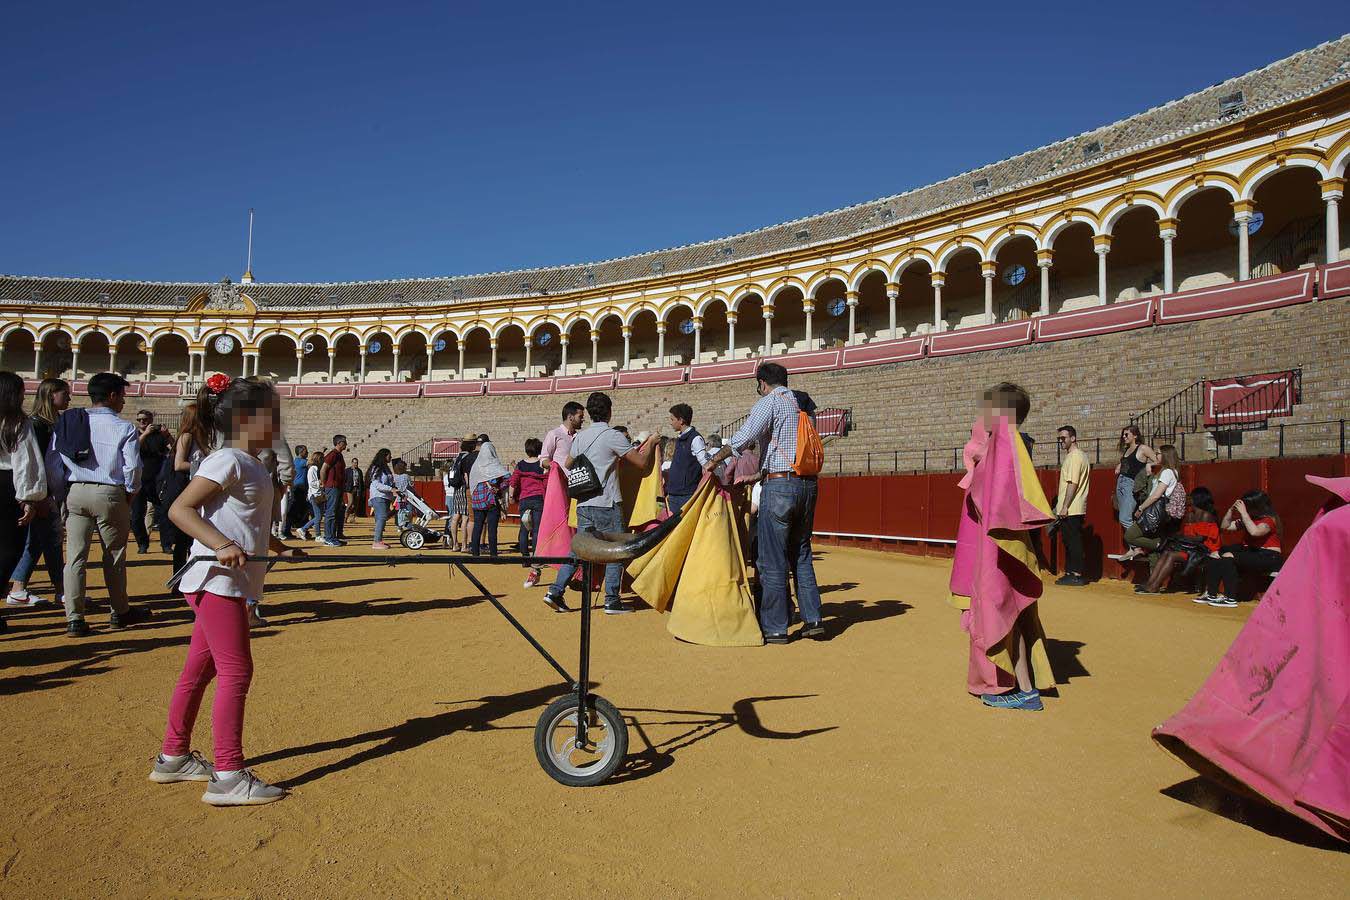 Jornada de puertas abiertas en la Plaza de Toros de la Real Maestranza de Sevilla